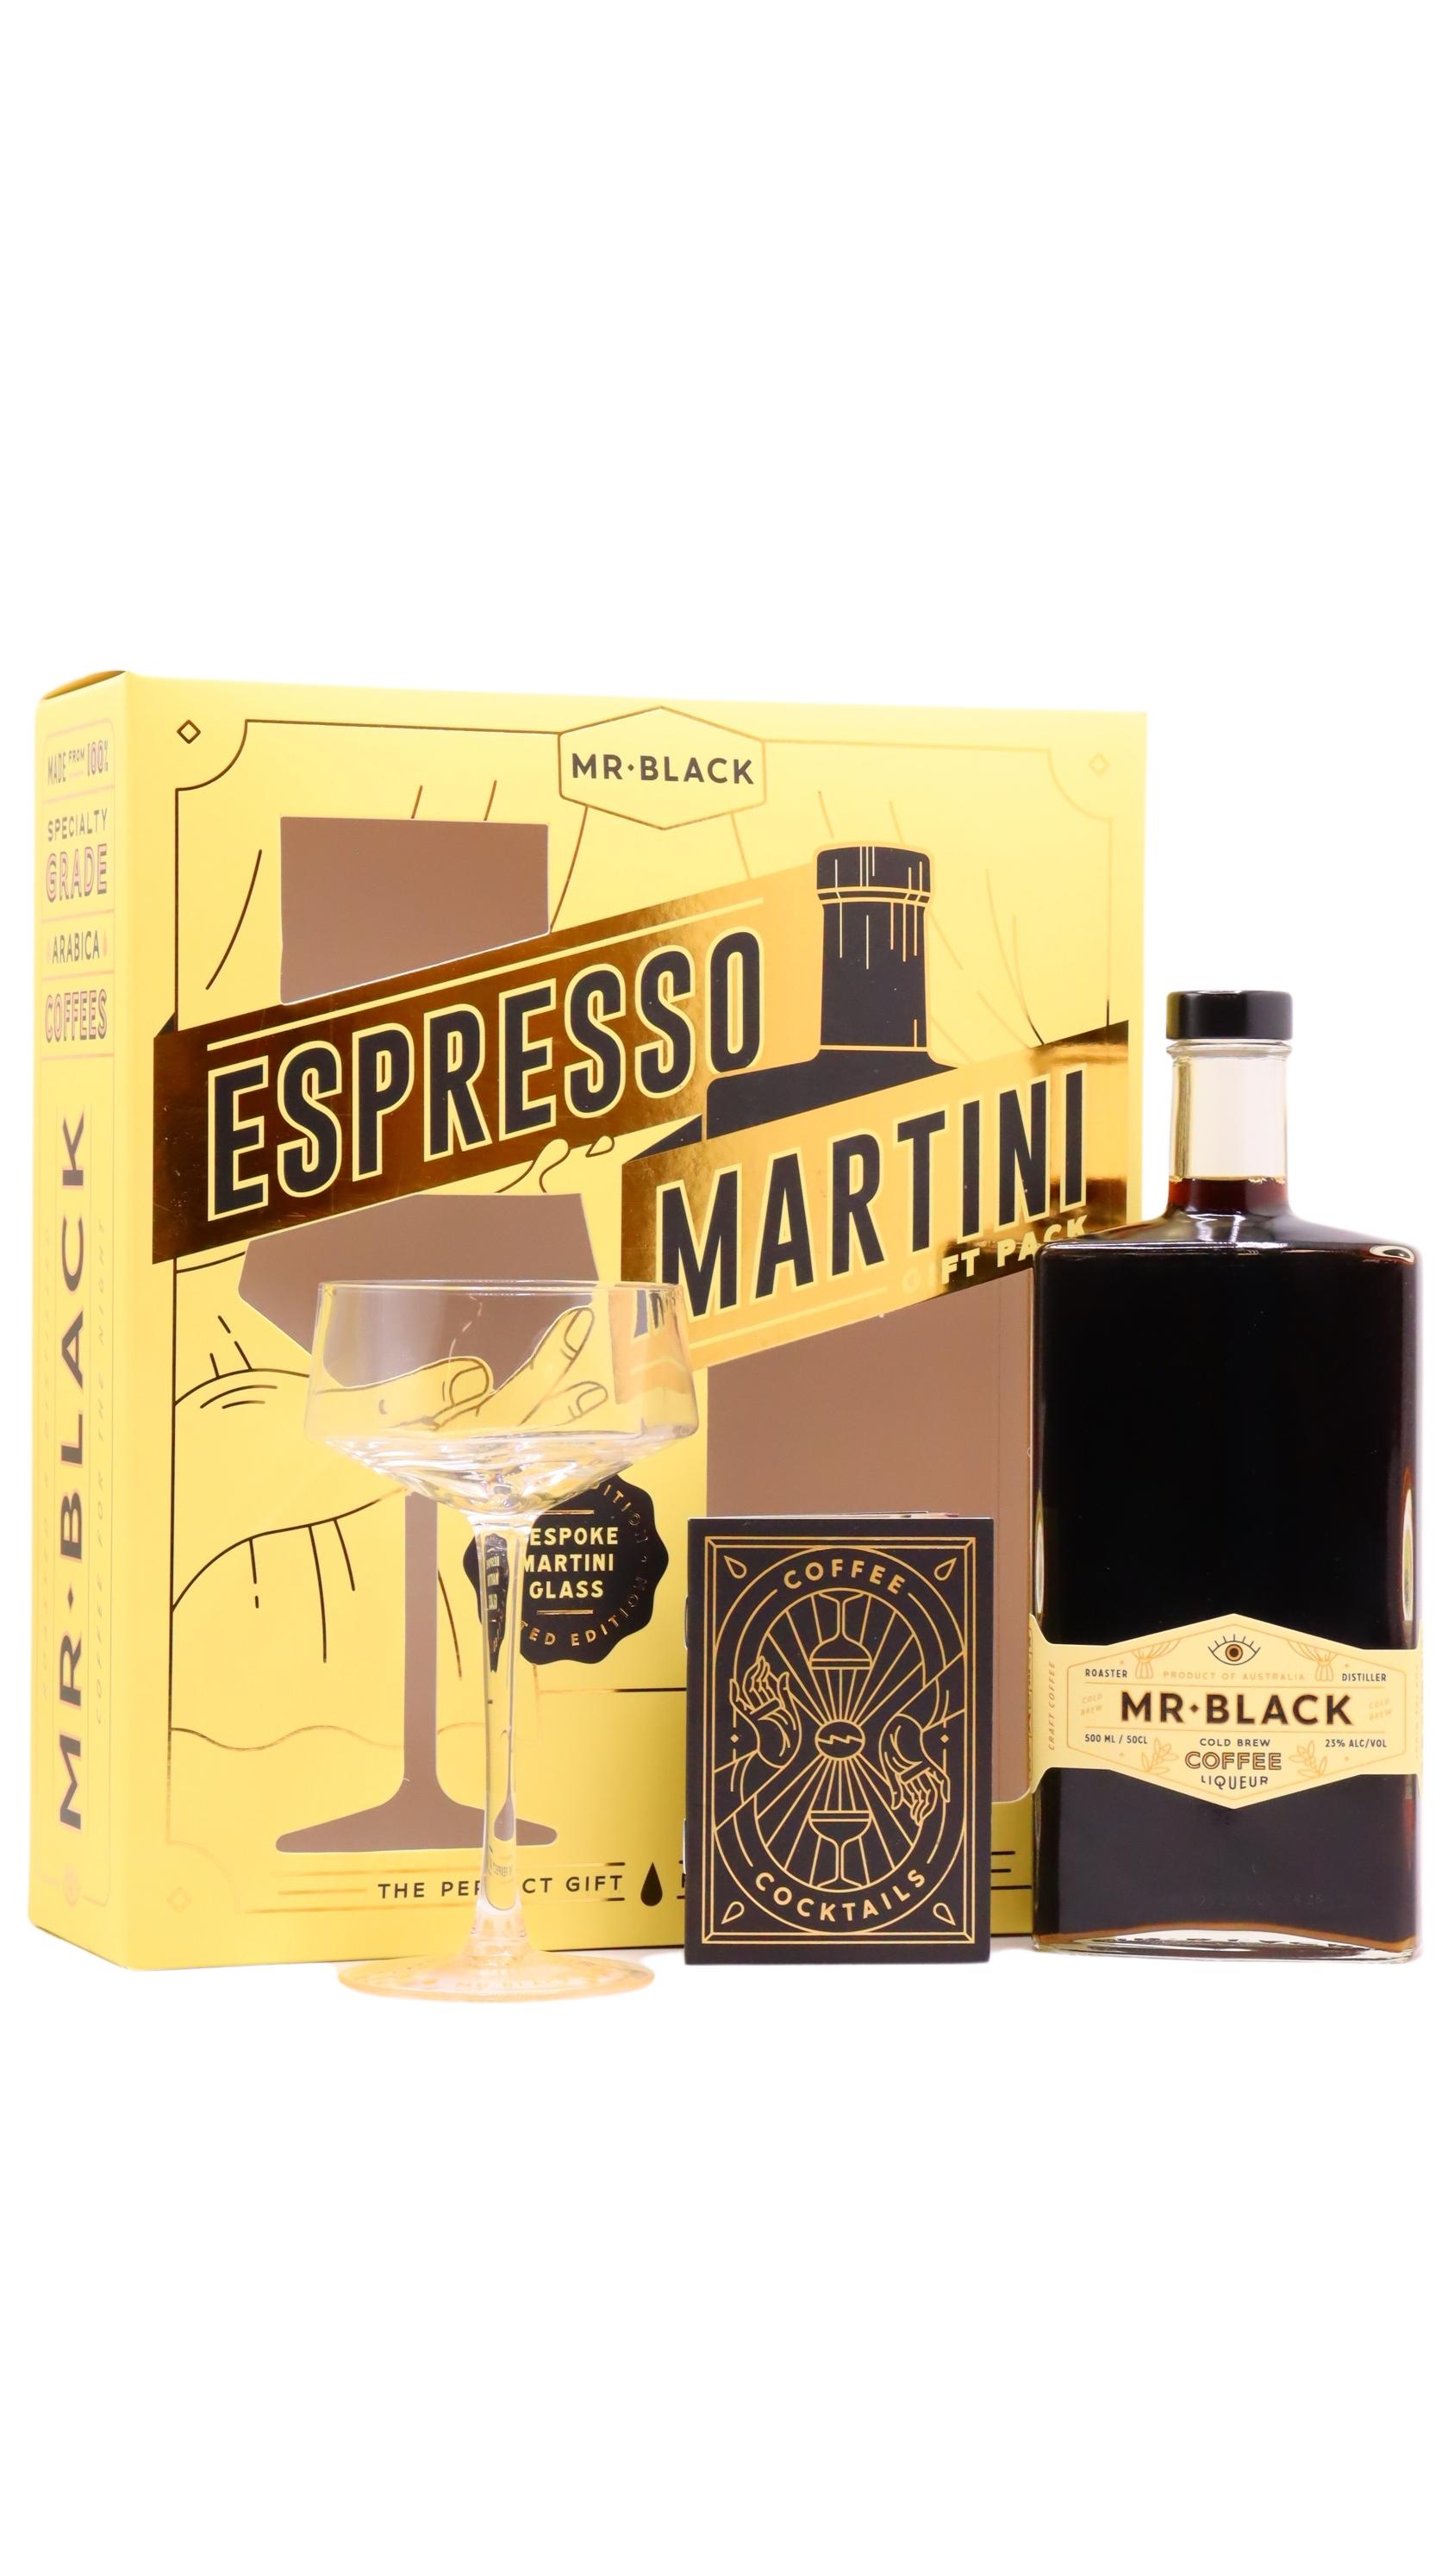 Mr Black Cold Brew Coffee Liqueur - Espresso Martini Gift Pack